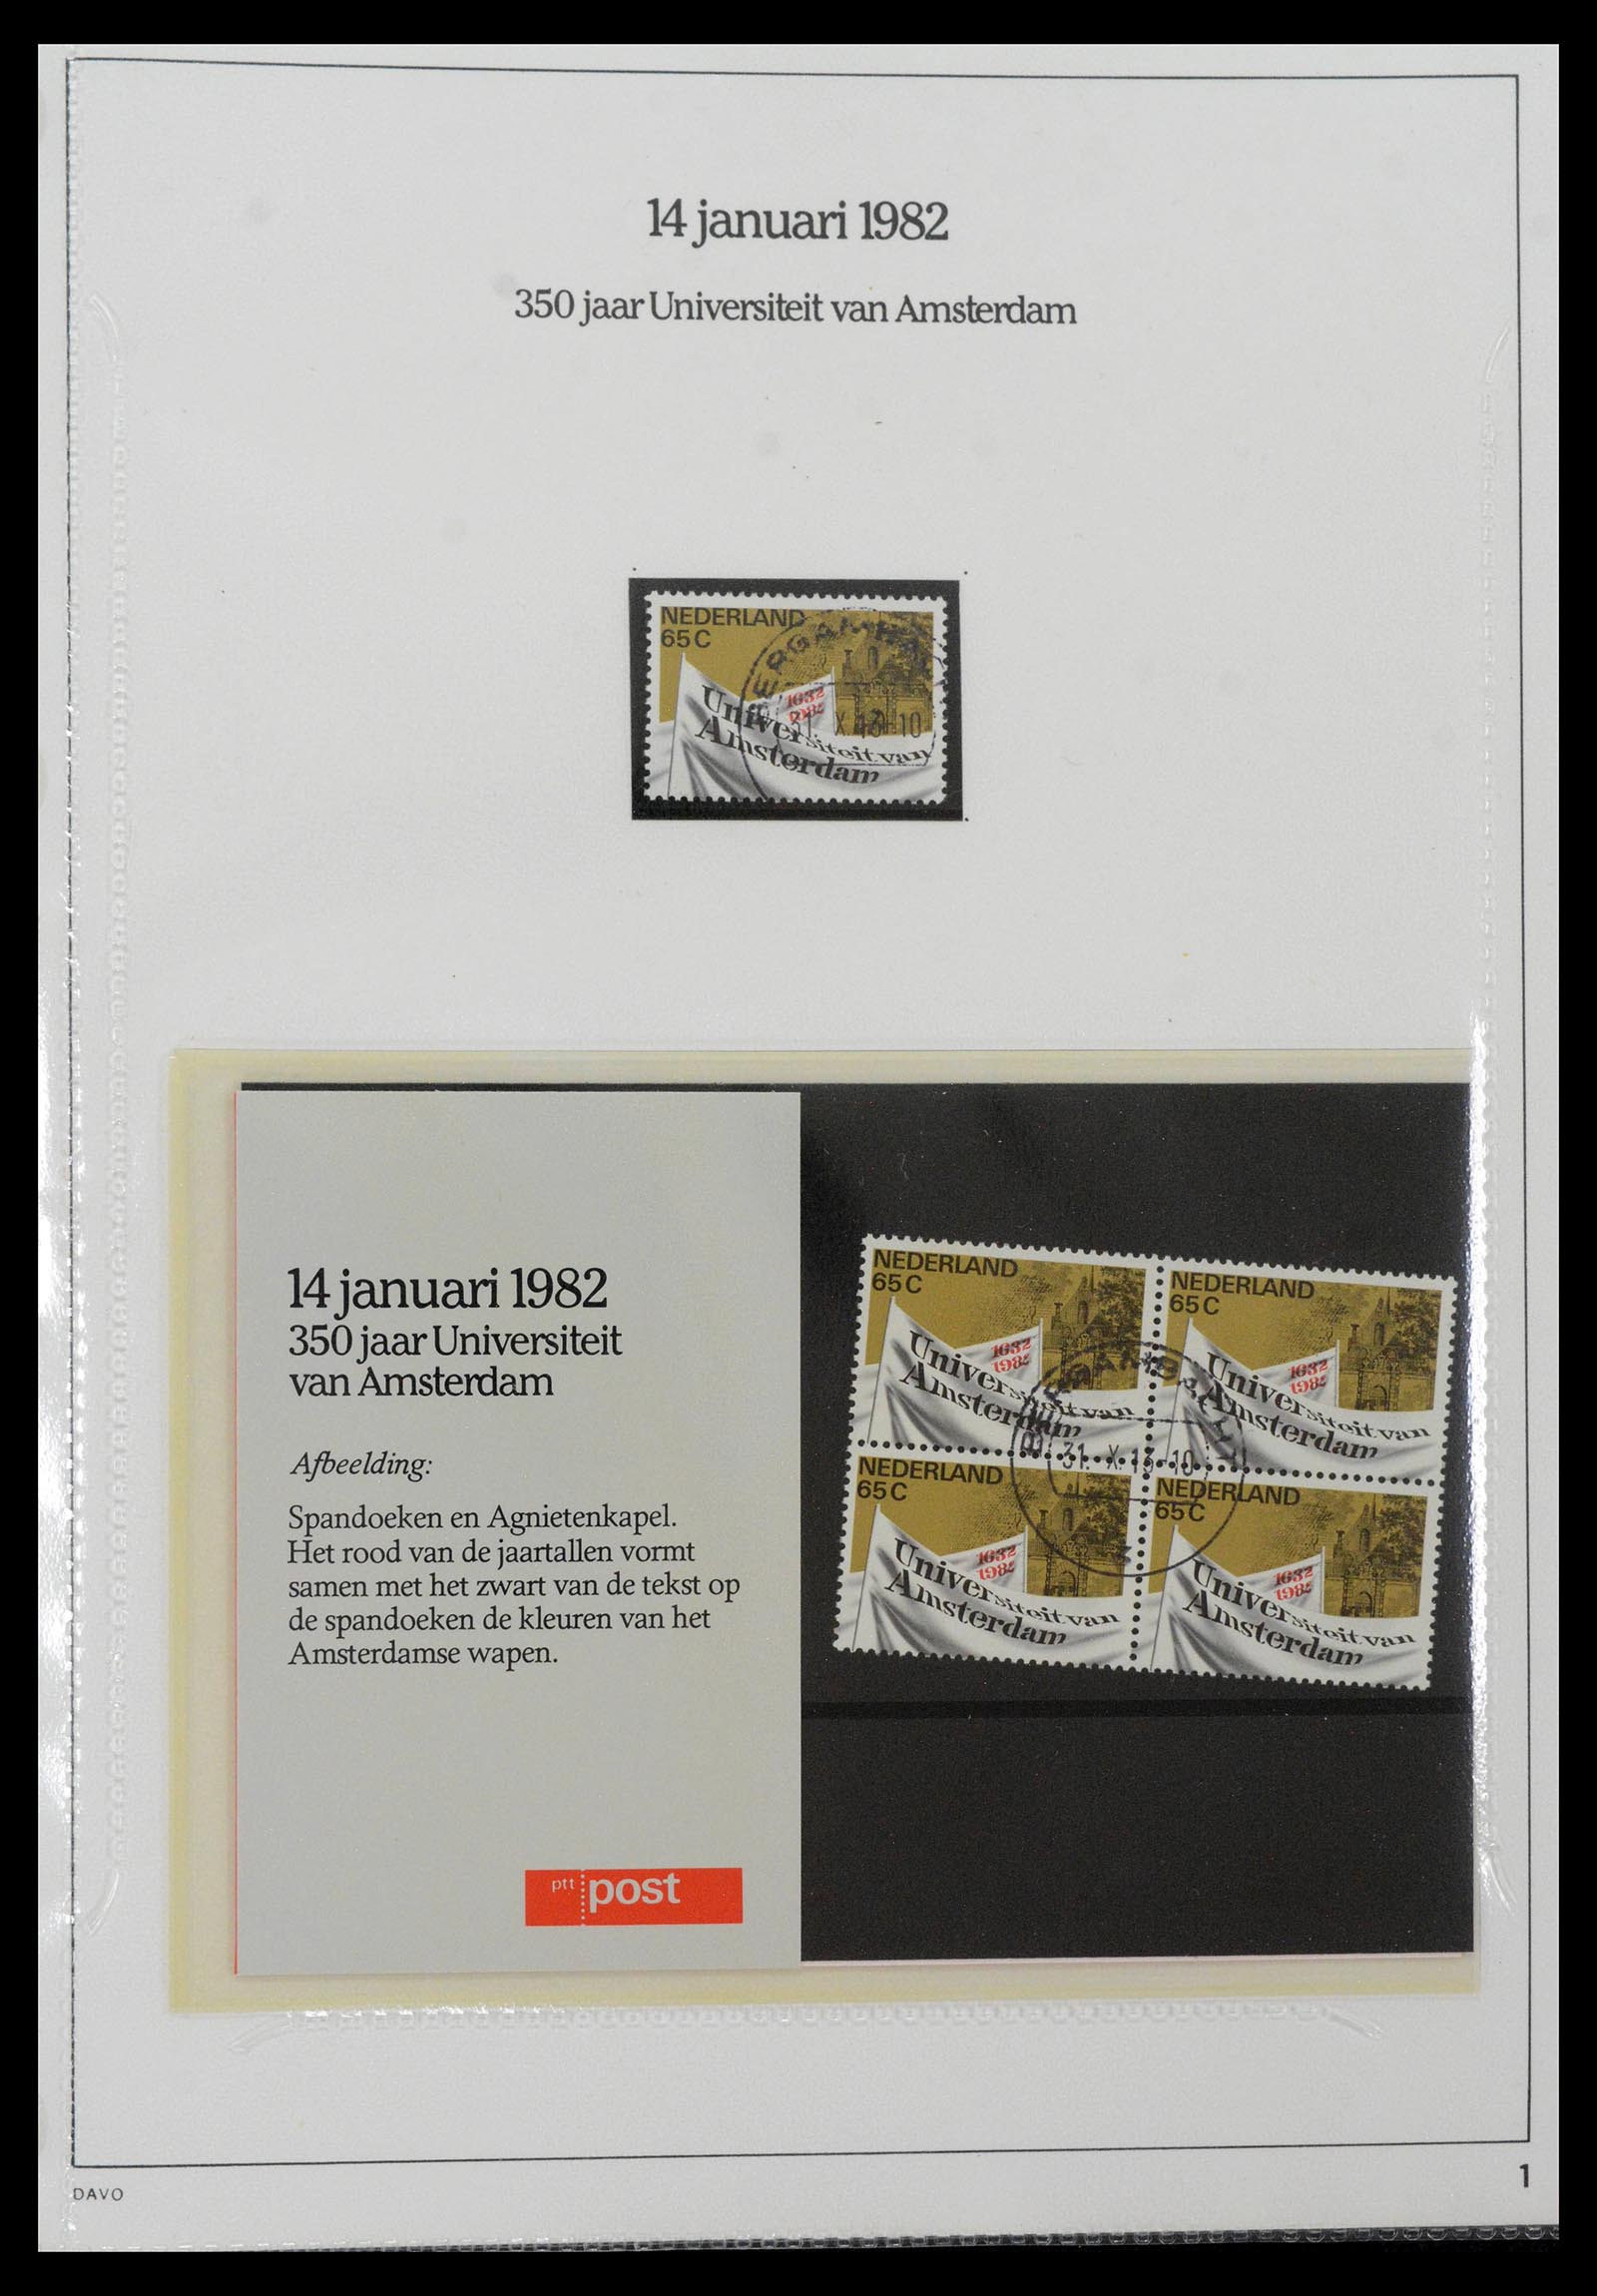 39121 0001 - Stamp collection 39121 Netherlands presentationpacks 1982-2001.